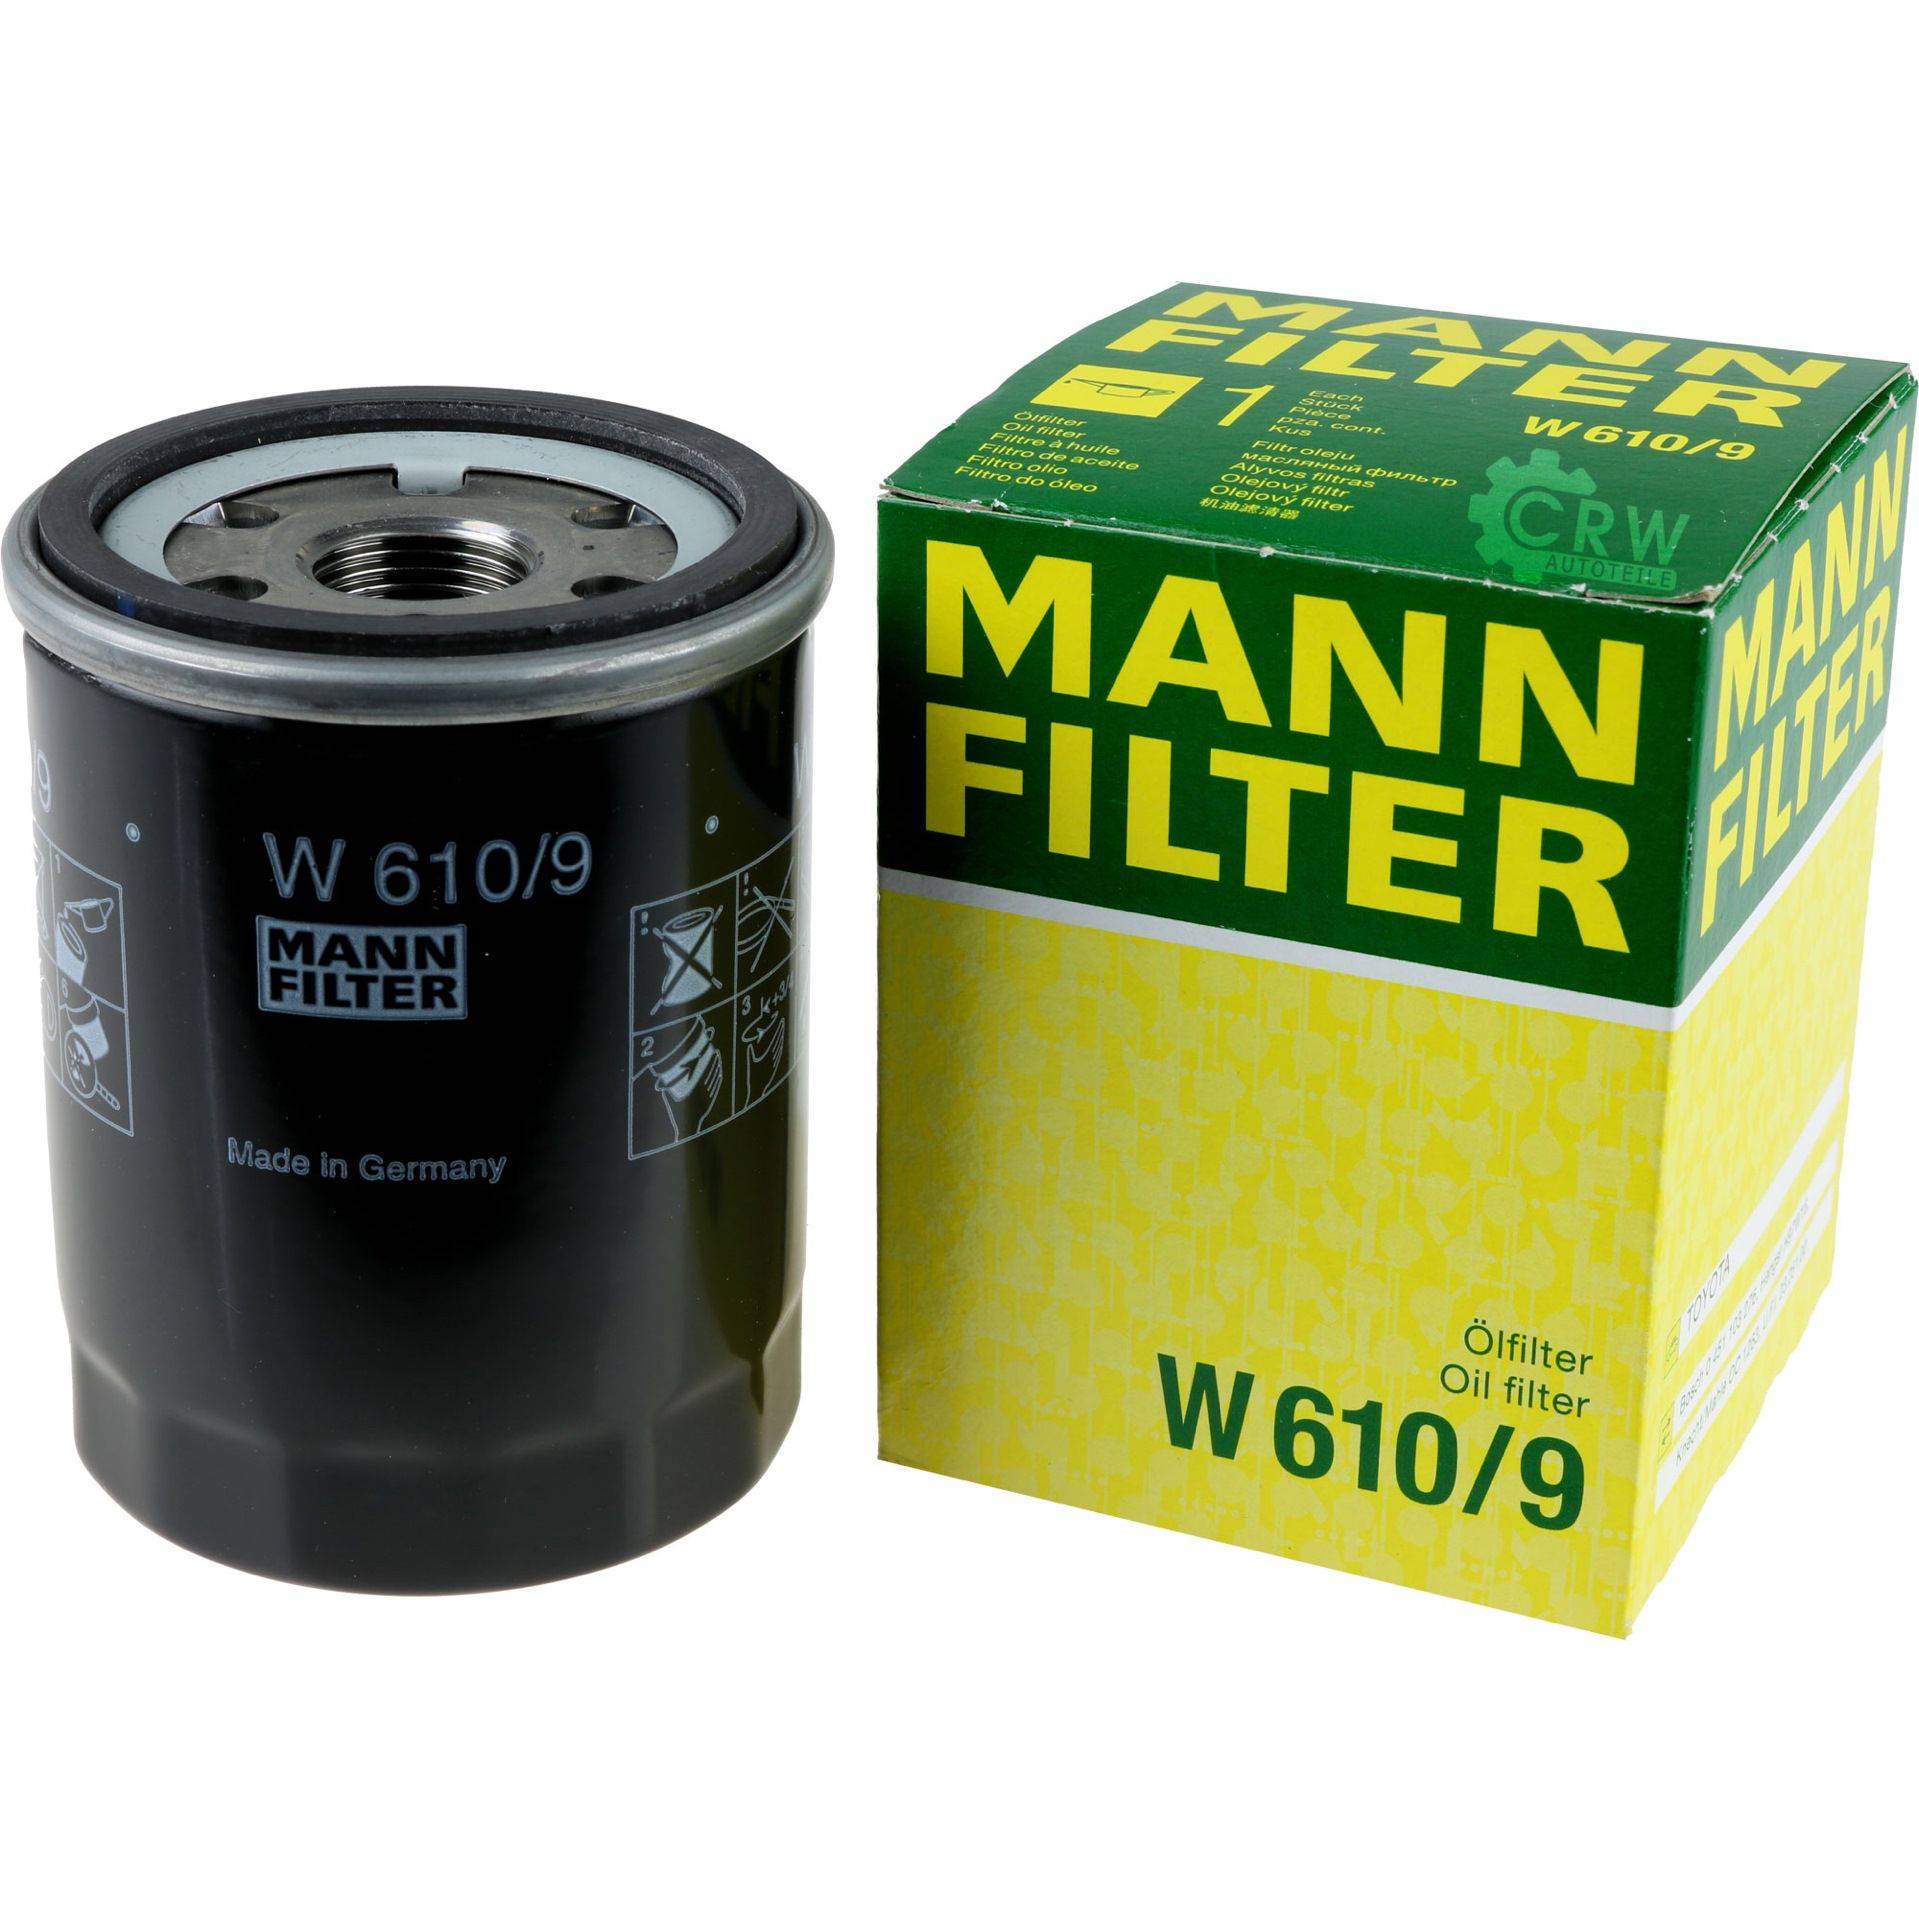 Масляный фильтр двигателя: виды, характеристики, какой лучше
масляный фильтр двигателя: виды, характеристики, какой лучше